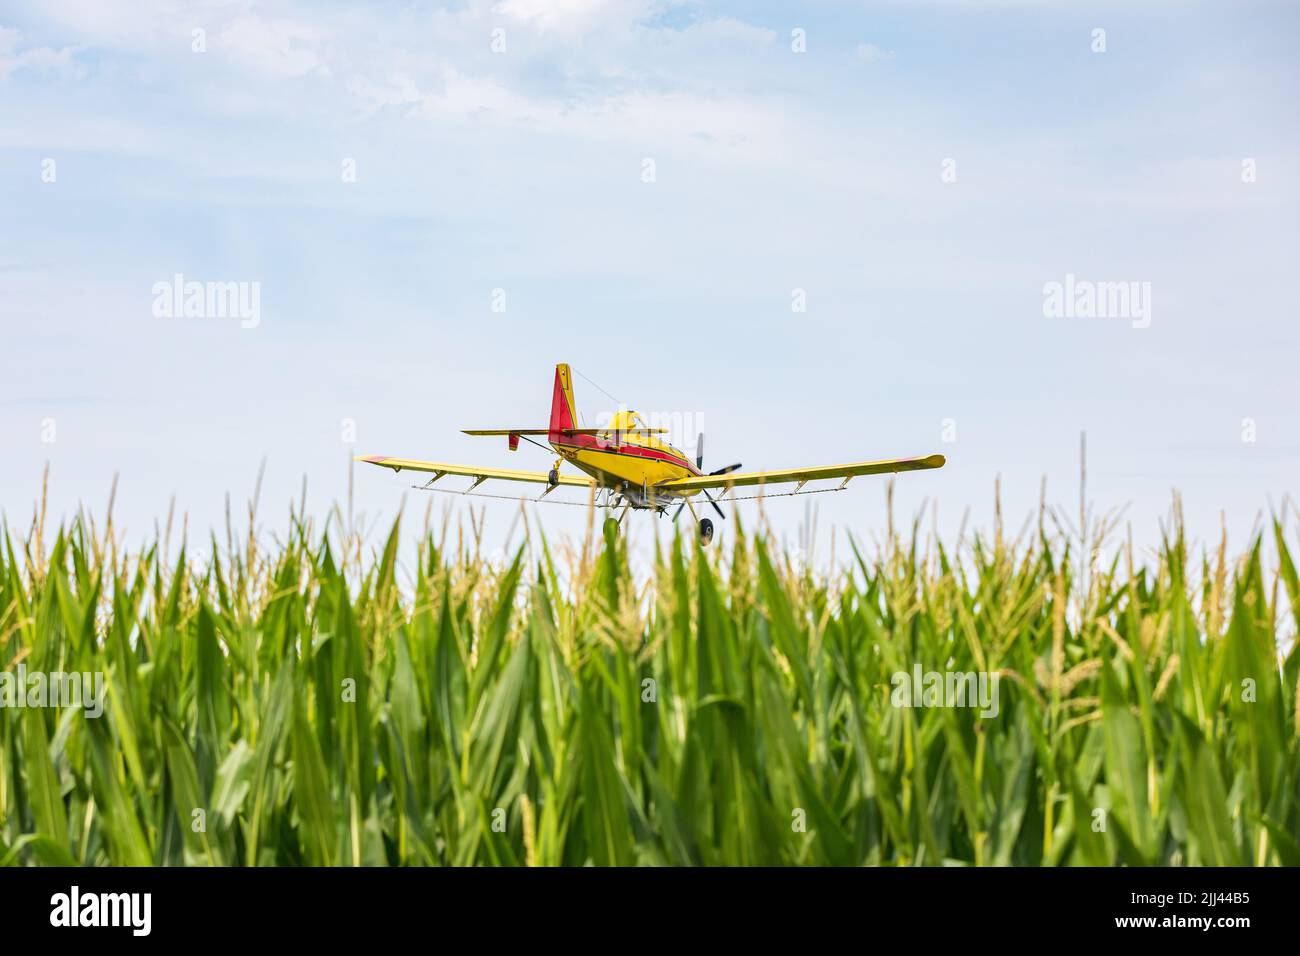 Pulverizador de cosecha de avión con productos químicos en el campo de maíz. Concepto de fungicida, pesticida y pulverización de cultivos. Foto de stock